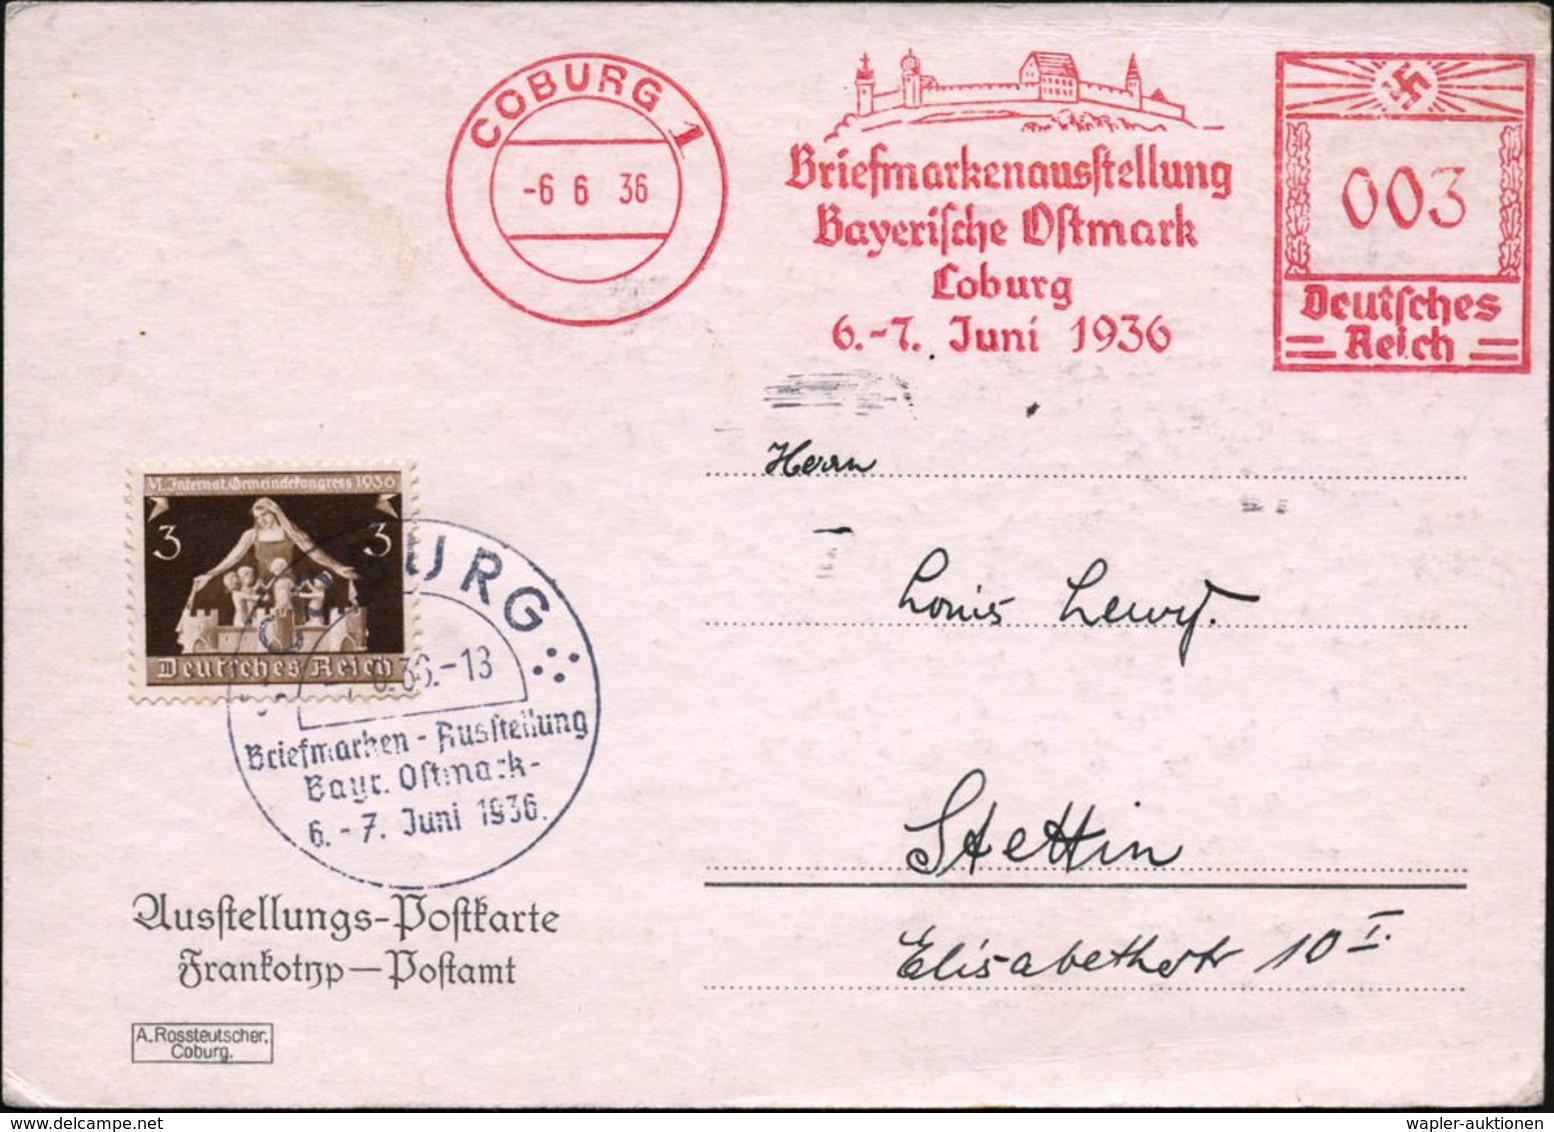 COBURG 1/ Briefmarkenausst./ Bayer.Ostmark/ ..6.-7.Juni 1936 (6.6.) AFS 003 Pf. = Veste Coburg, Lutherstätte + 3 Pf. Zus - Christianity